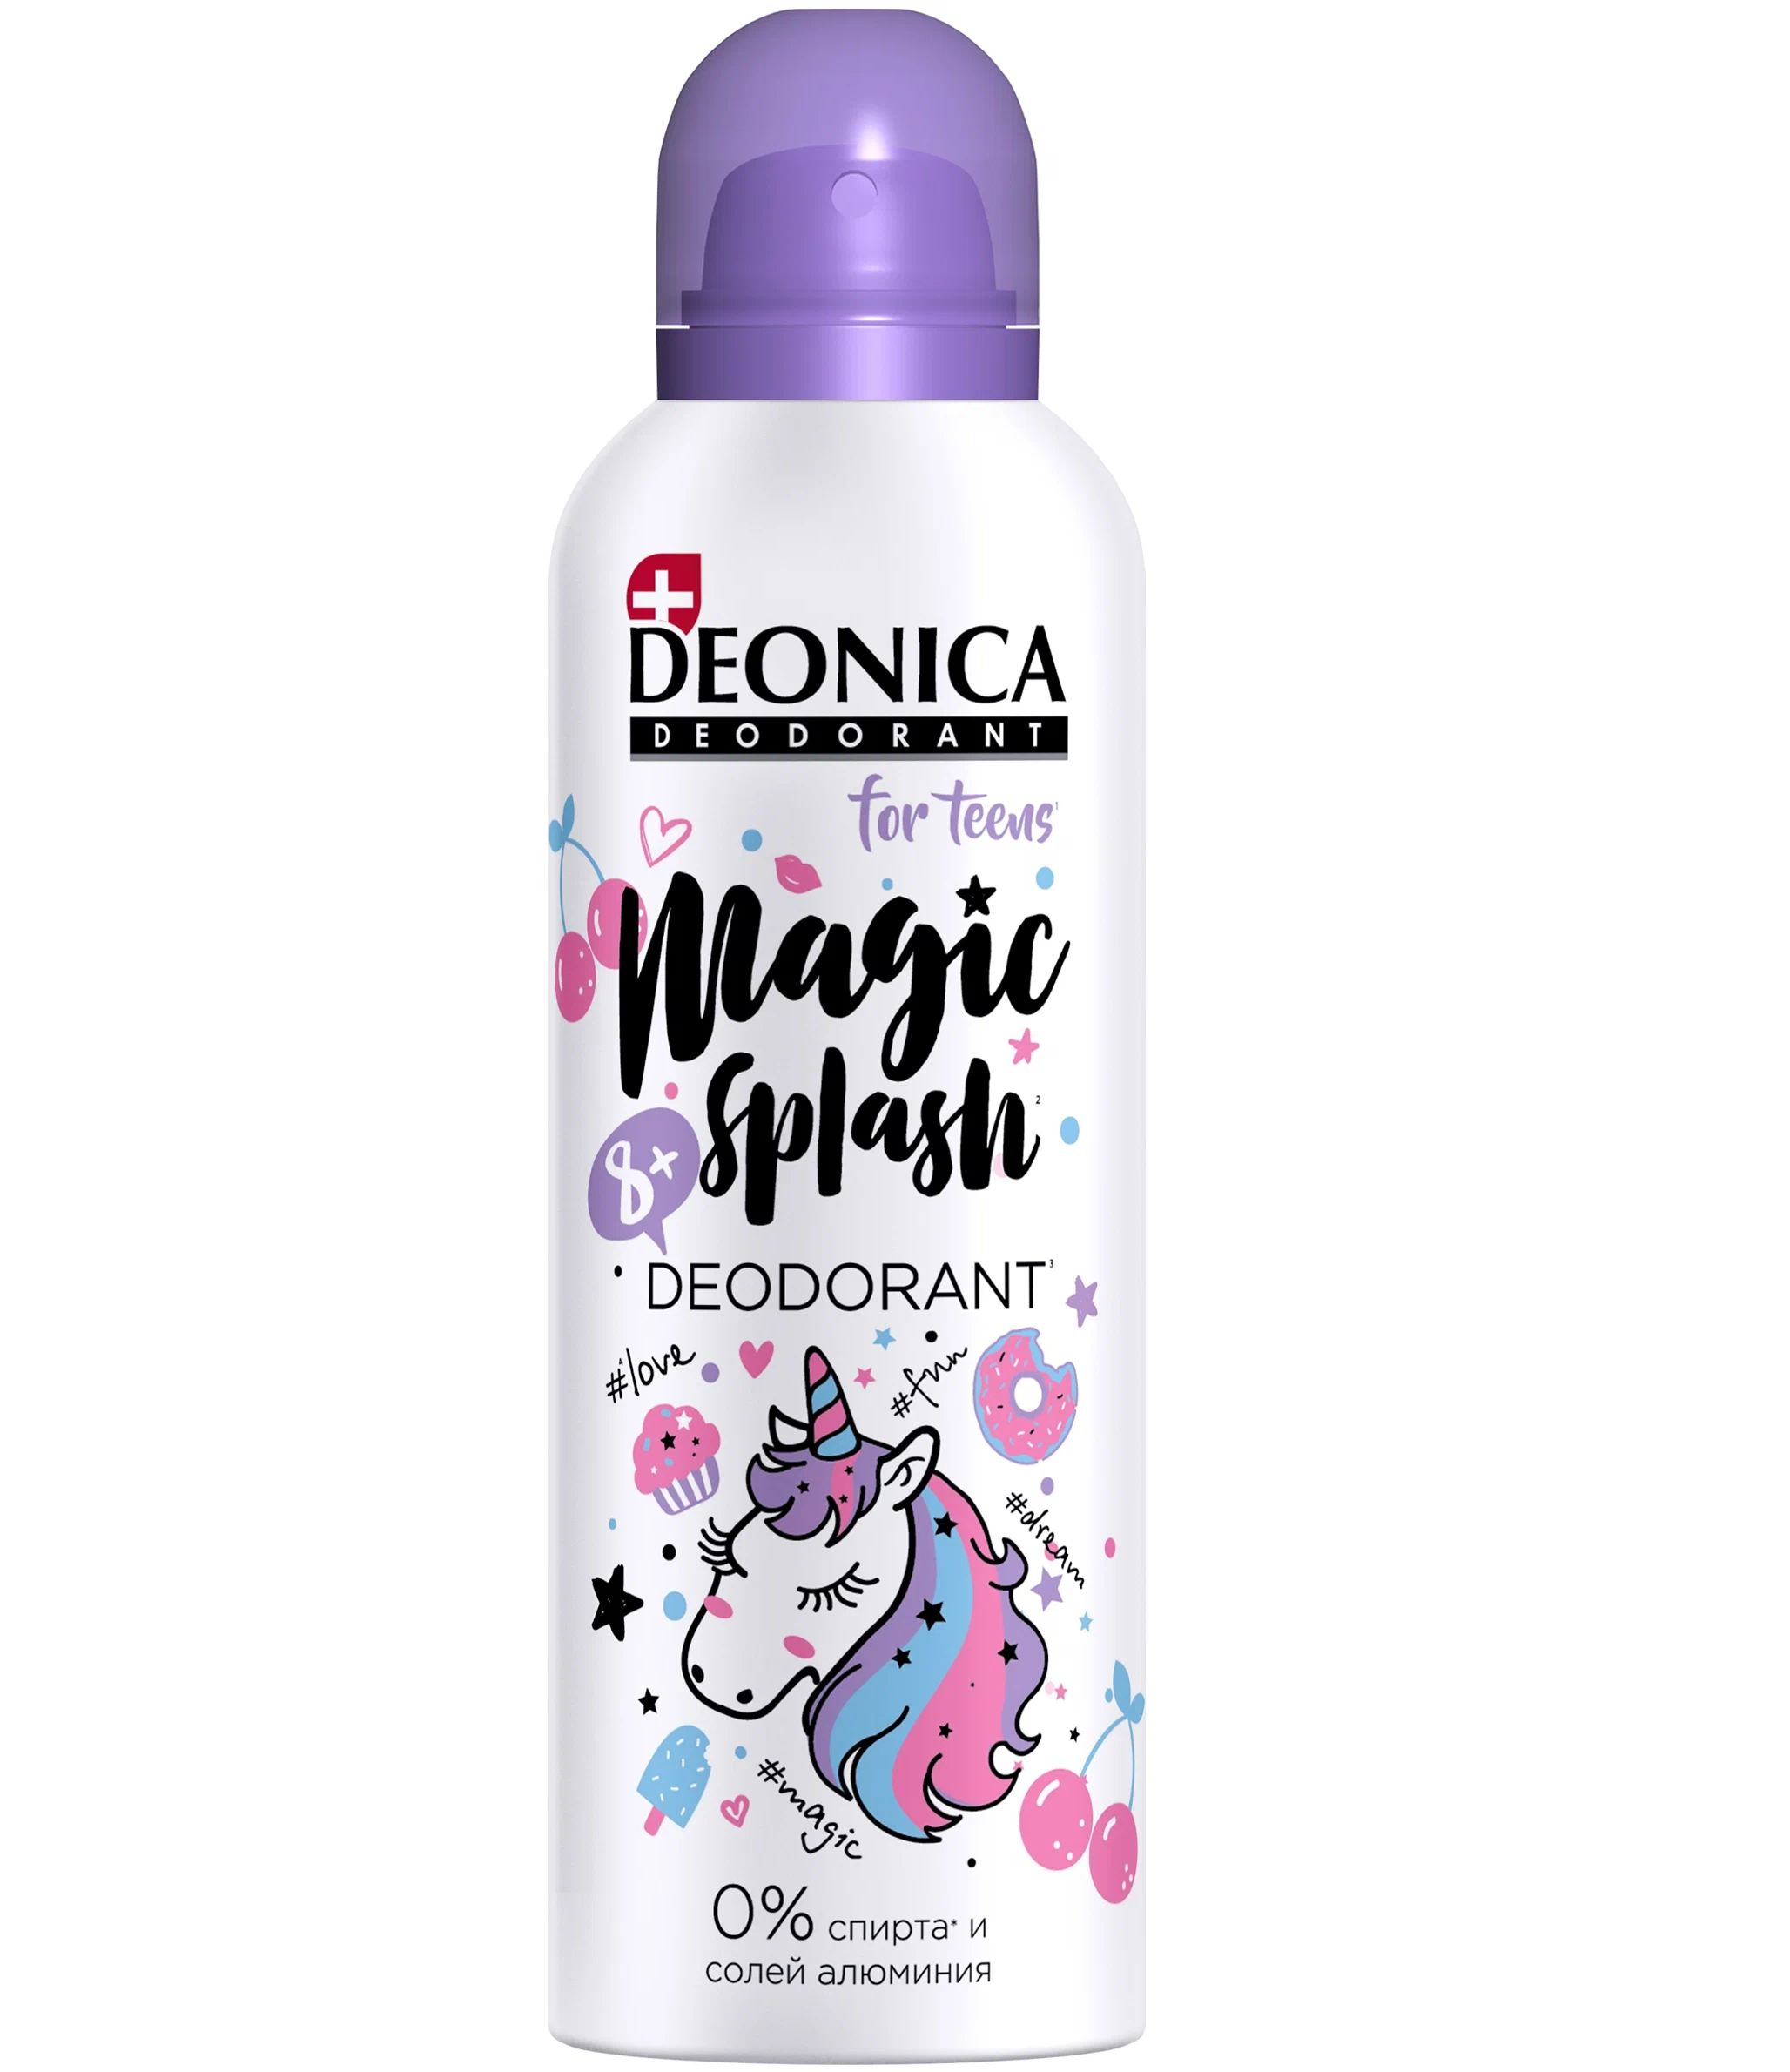 Дезодорант Deonica For teens Magic Splash 125 мл дезодорант deonica for teens magic splash 125 мл